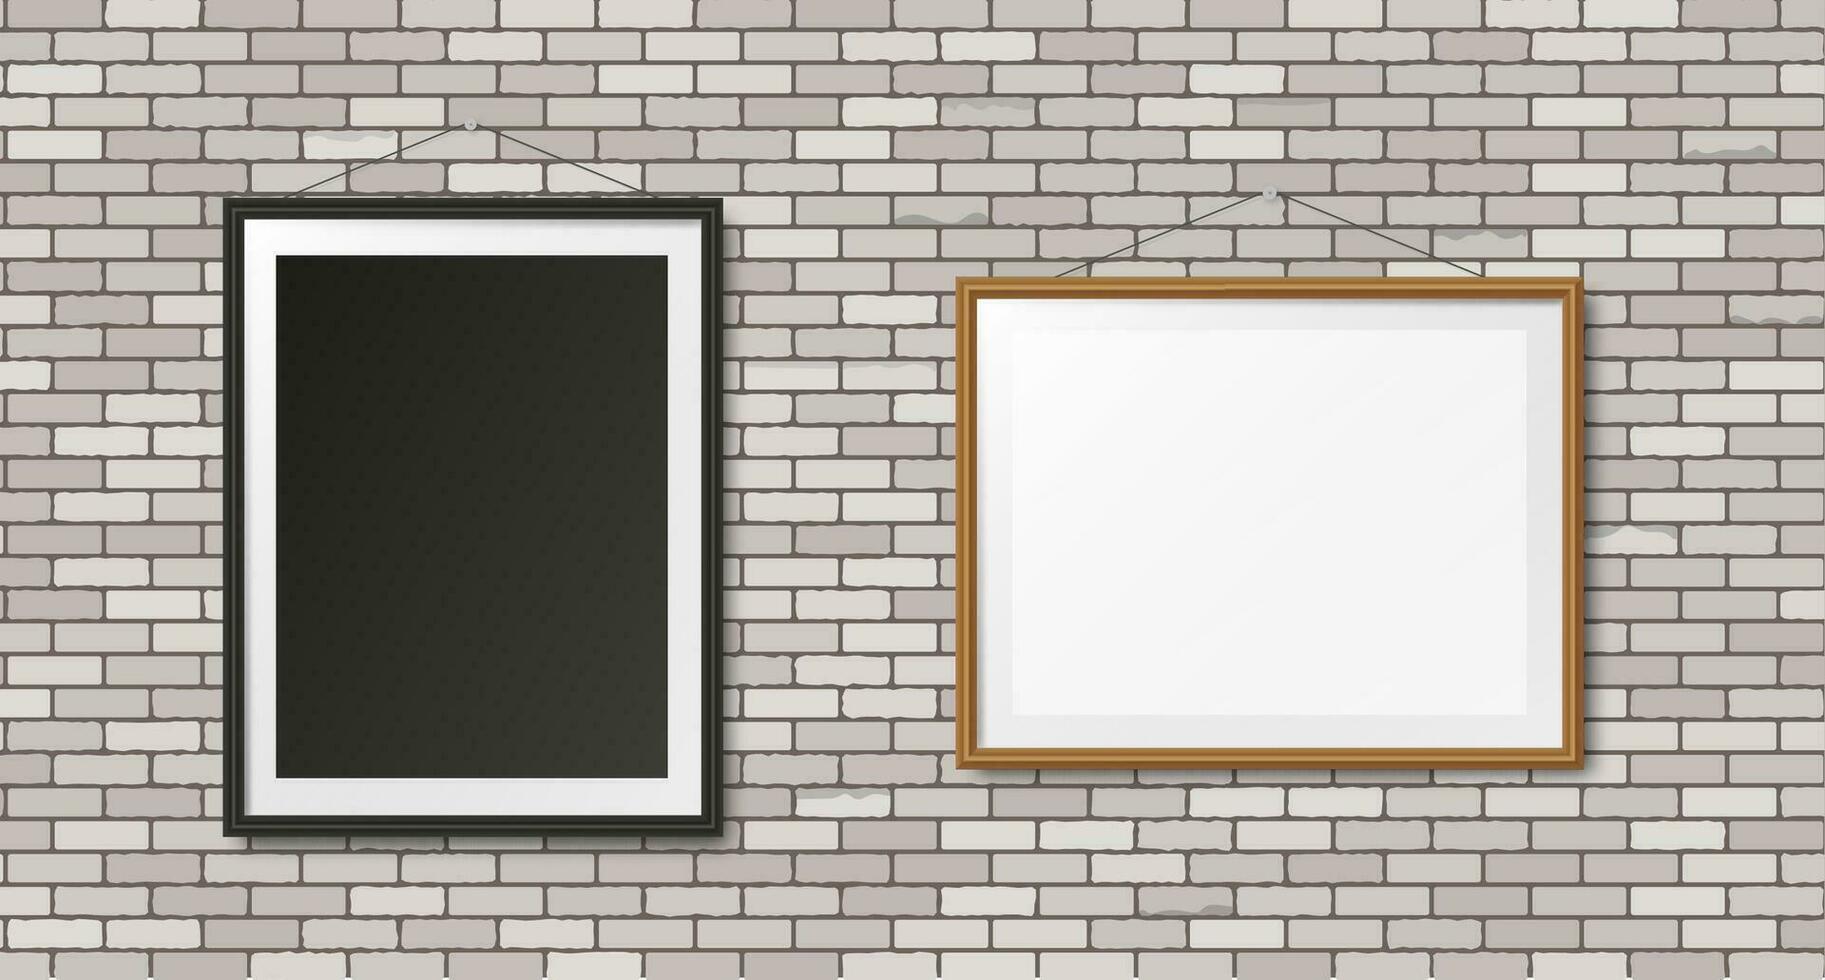 bianca mattone parete con realistico di legno nero e Marrone foto cornici. vettore illustrazione